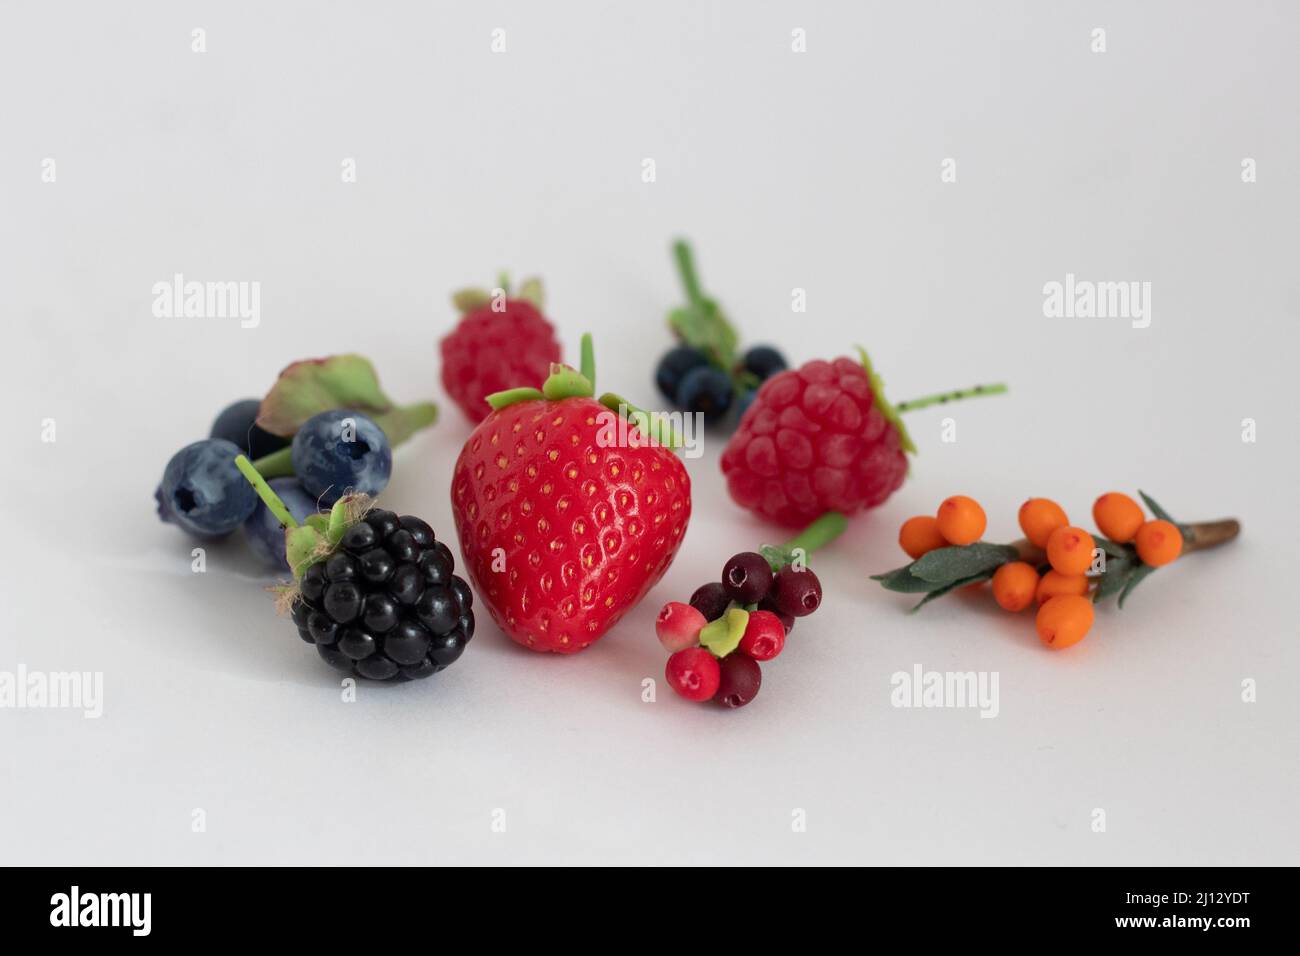 Miniature figures of strawberries, blackberries, raspberries, blueberries, blueberries, cranberries and cranberries Stock Photo